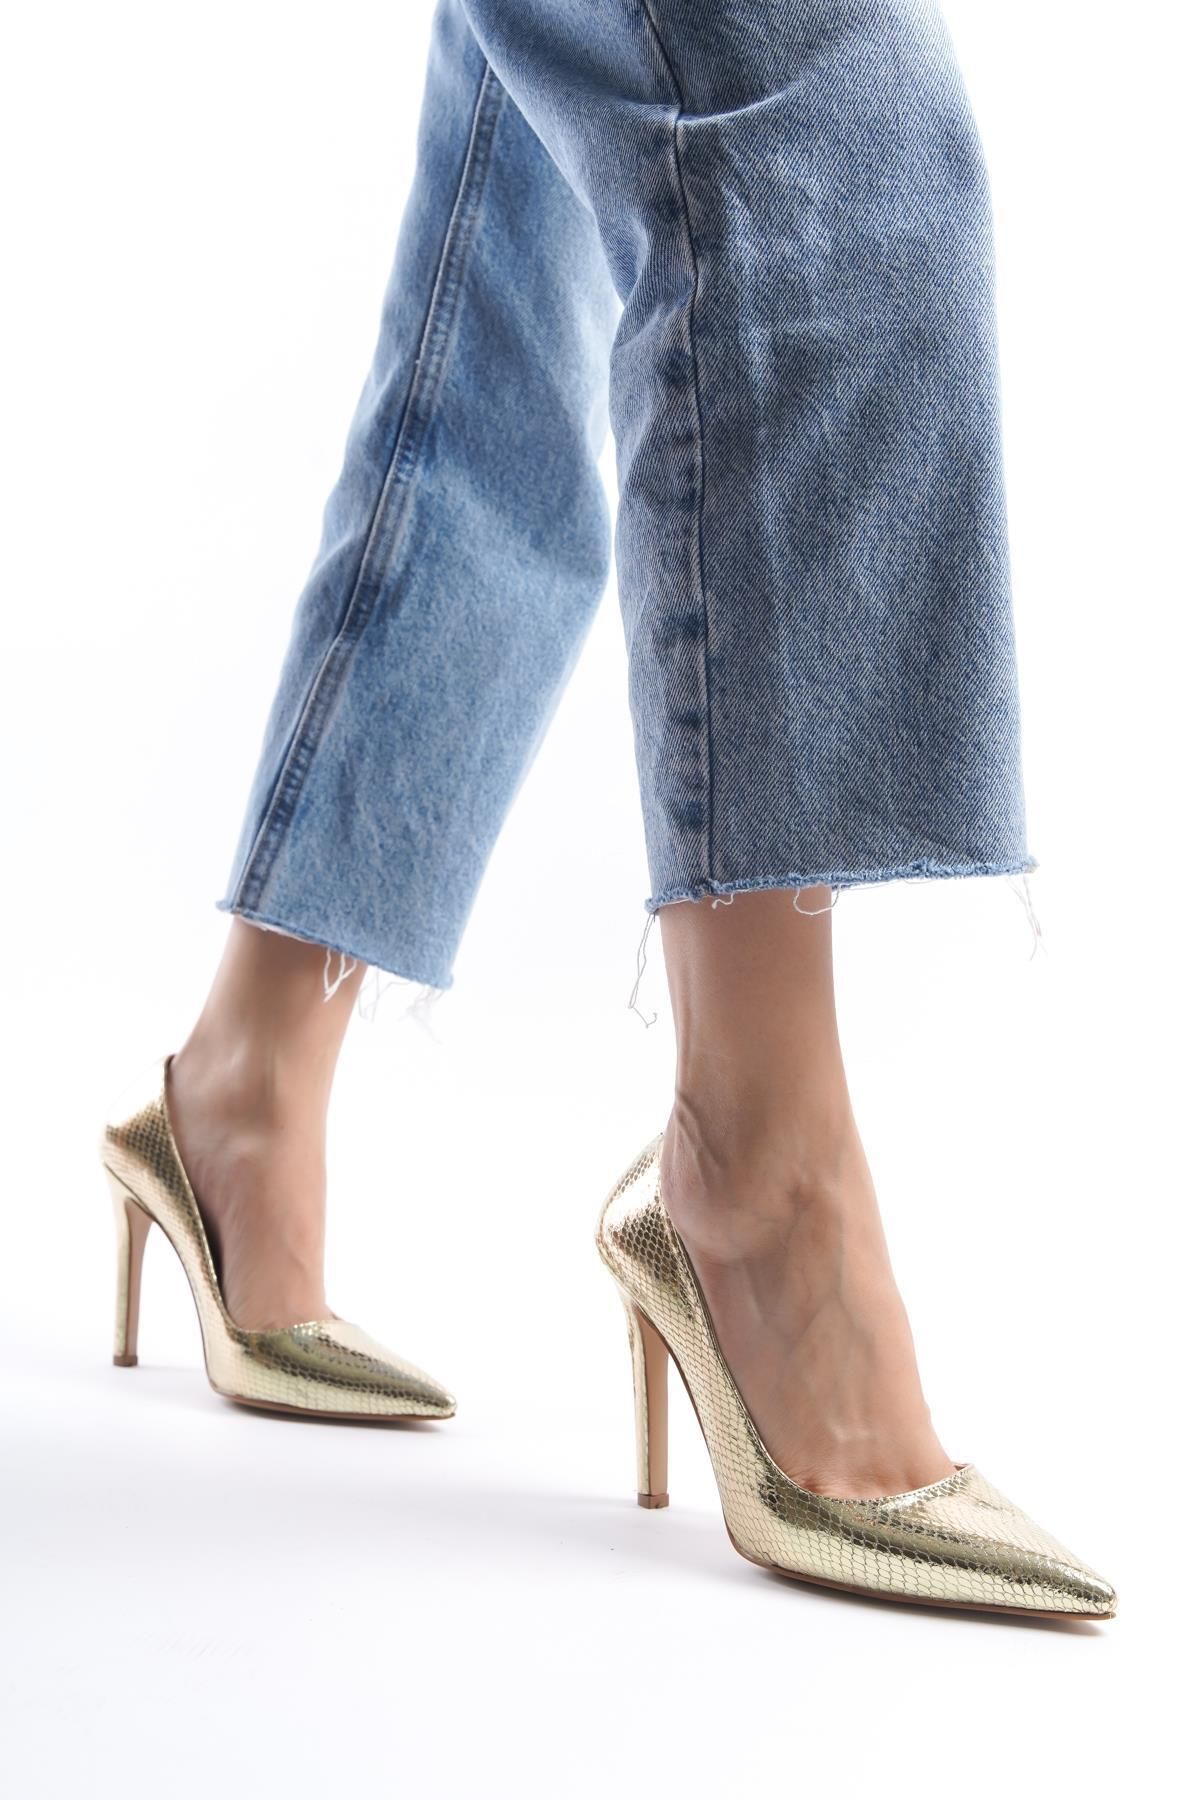 HVZ Exclusive Kadın Stiletto Topuklu Ayakkabı (KALIP 1 BEDEN KÜÇÜK)